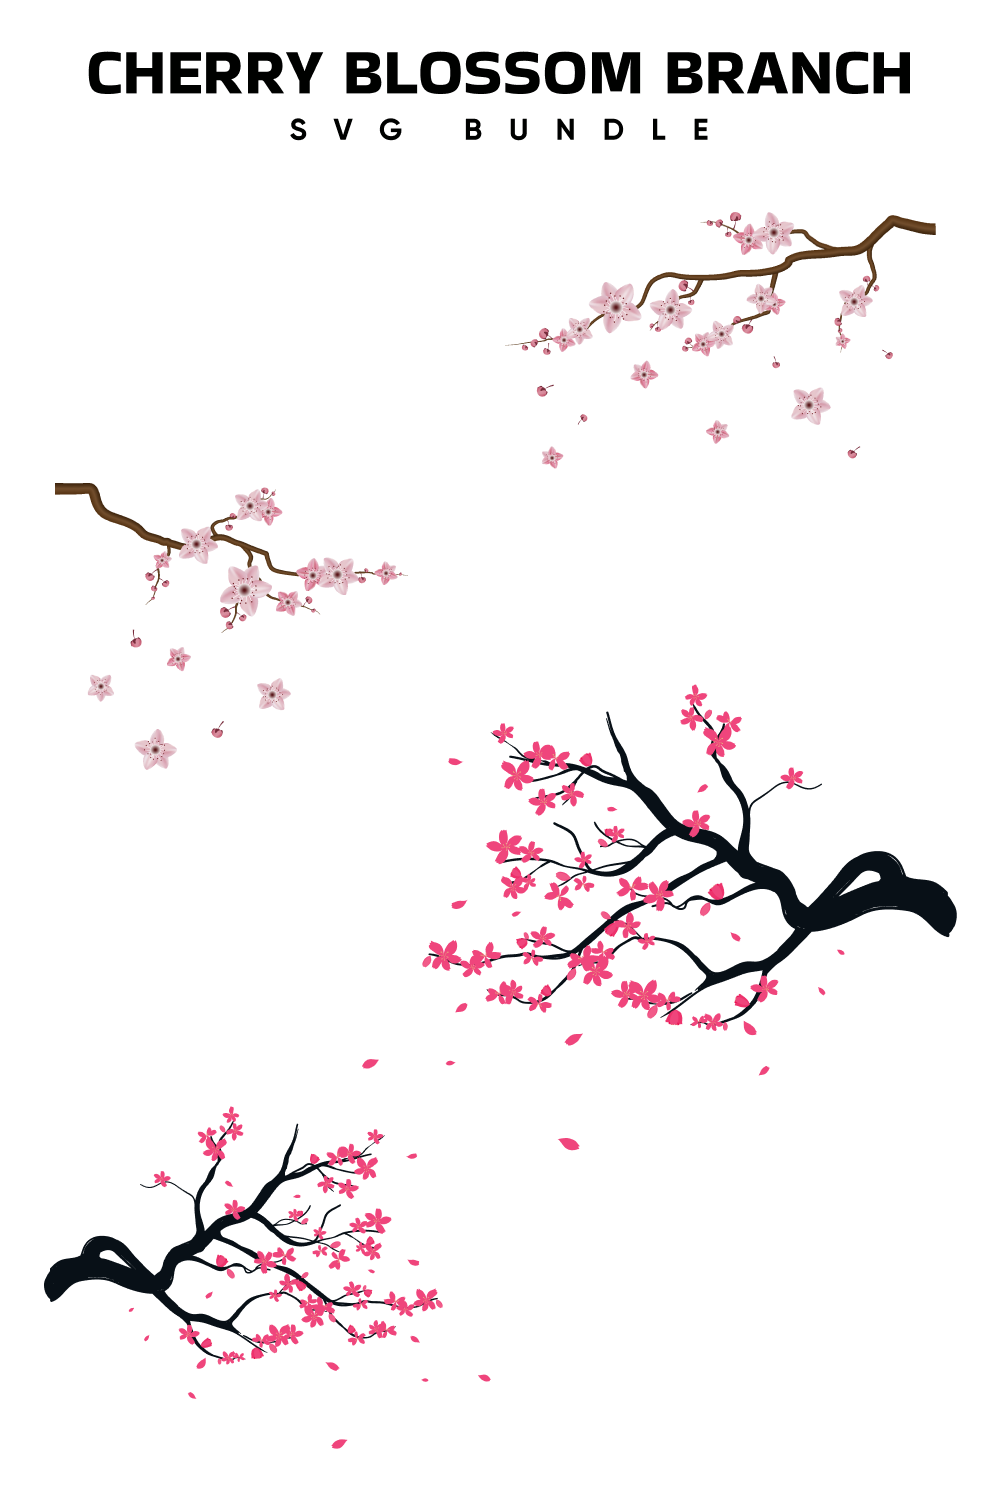 01. cherry blossom branch svg bundle 1000 x 1500 58